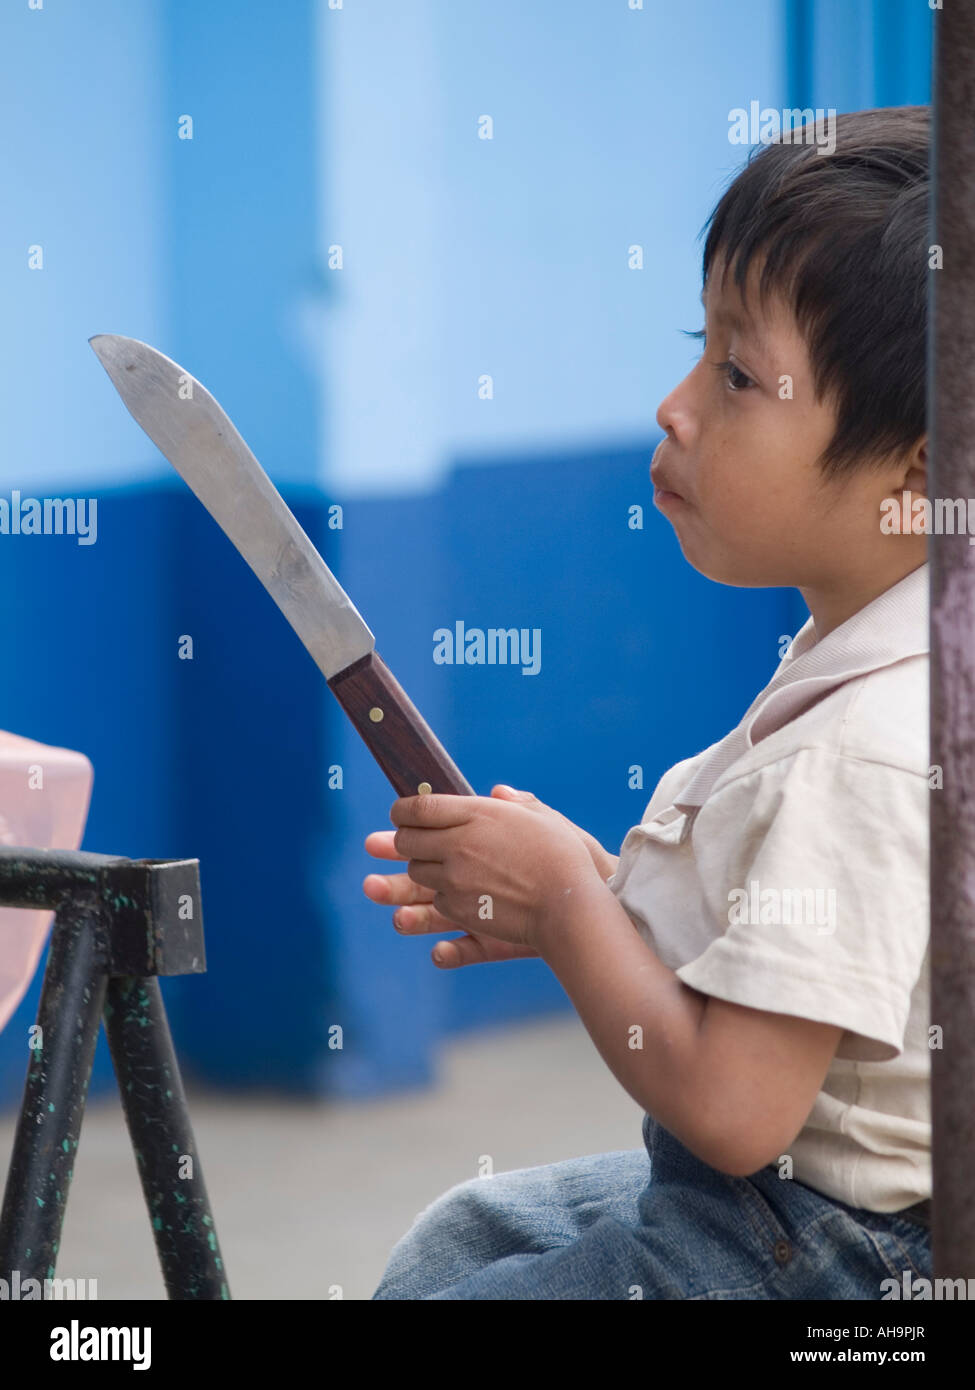 1,208 en la categoría «Child knife danger» de fotos e imágenes de stock  libres de regalías